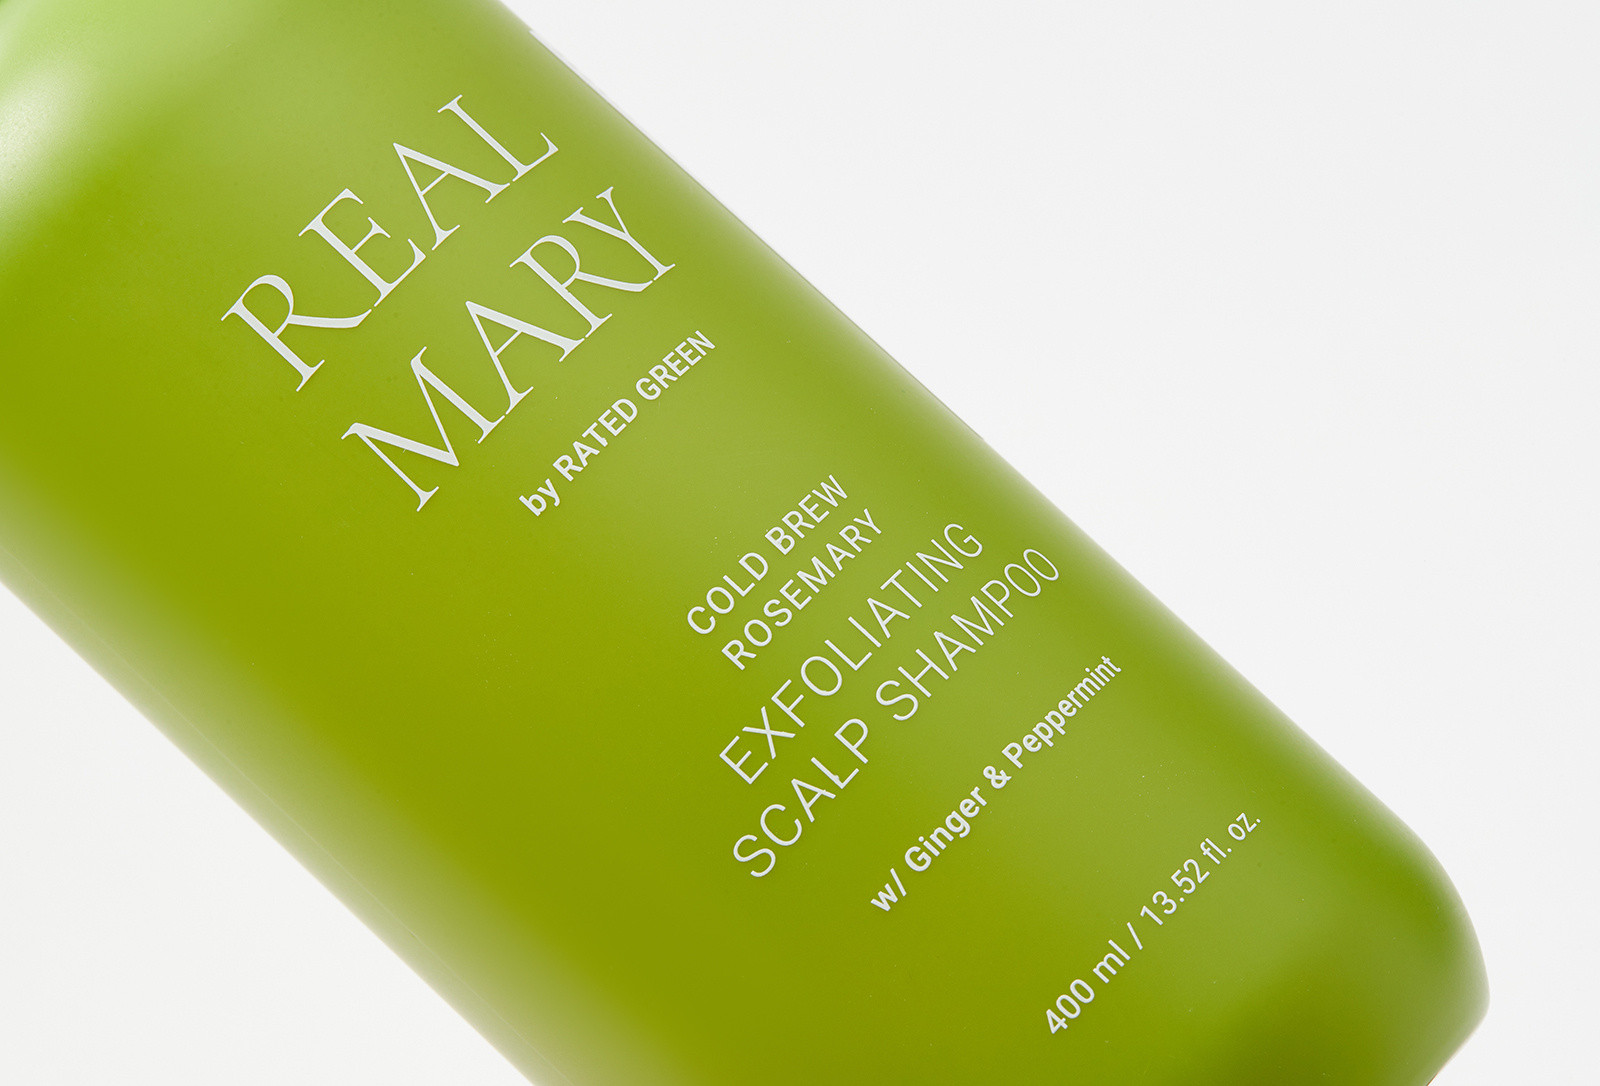 Глубокоочищающий шампунь с соком розмарина Rated Green Real Mary Exfoliating Scalp Shampoo